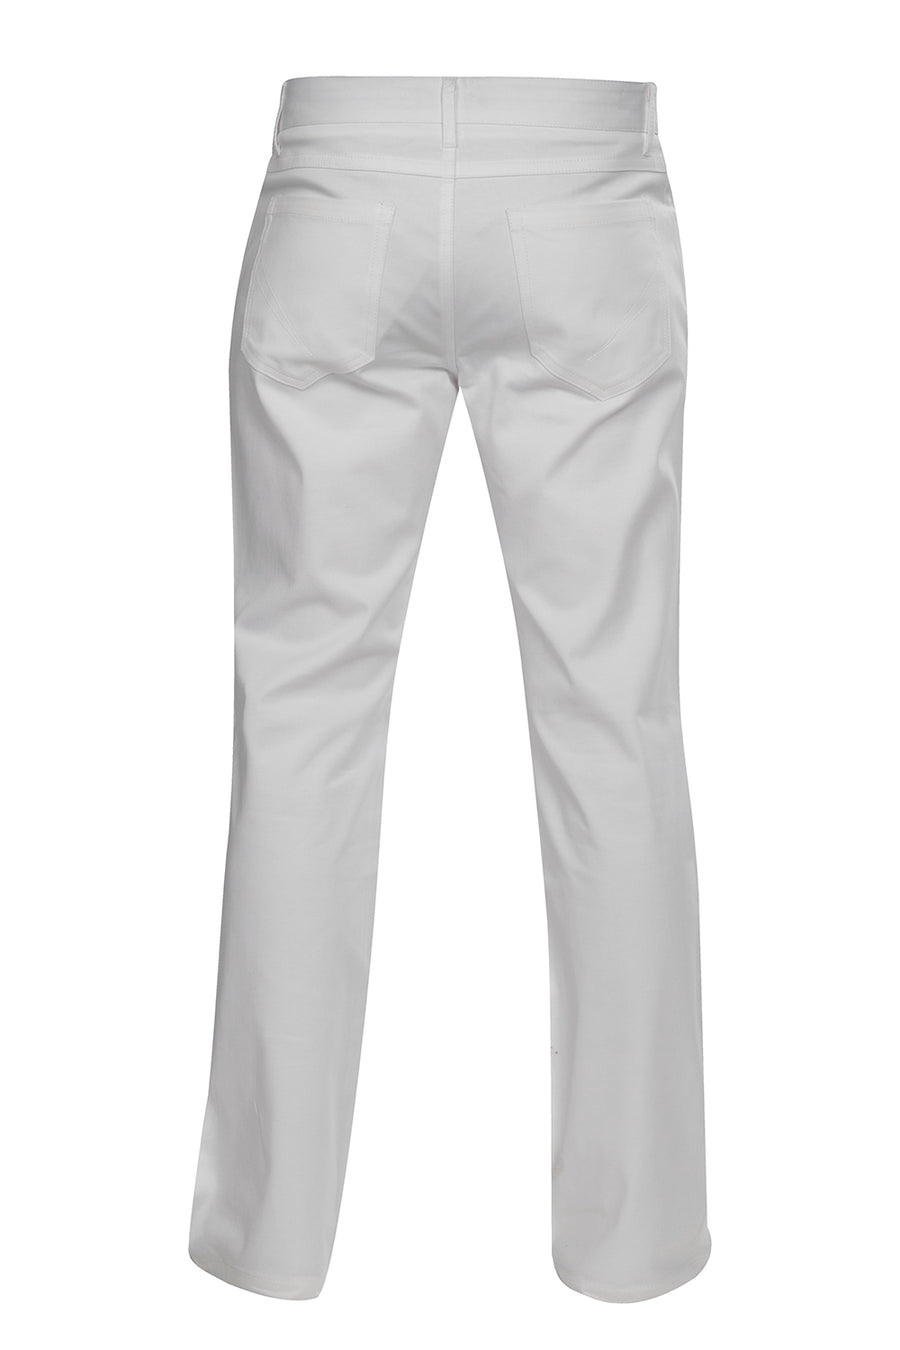 pantalon-de-vestir-blanco